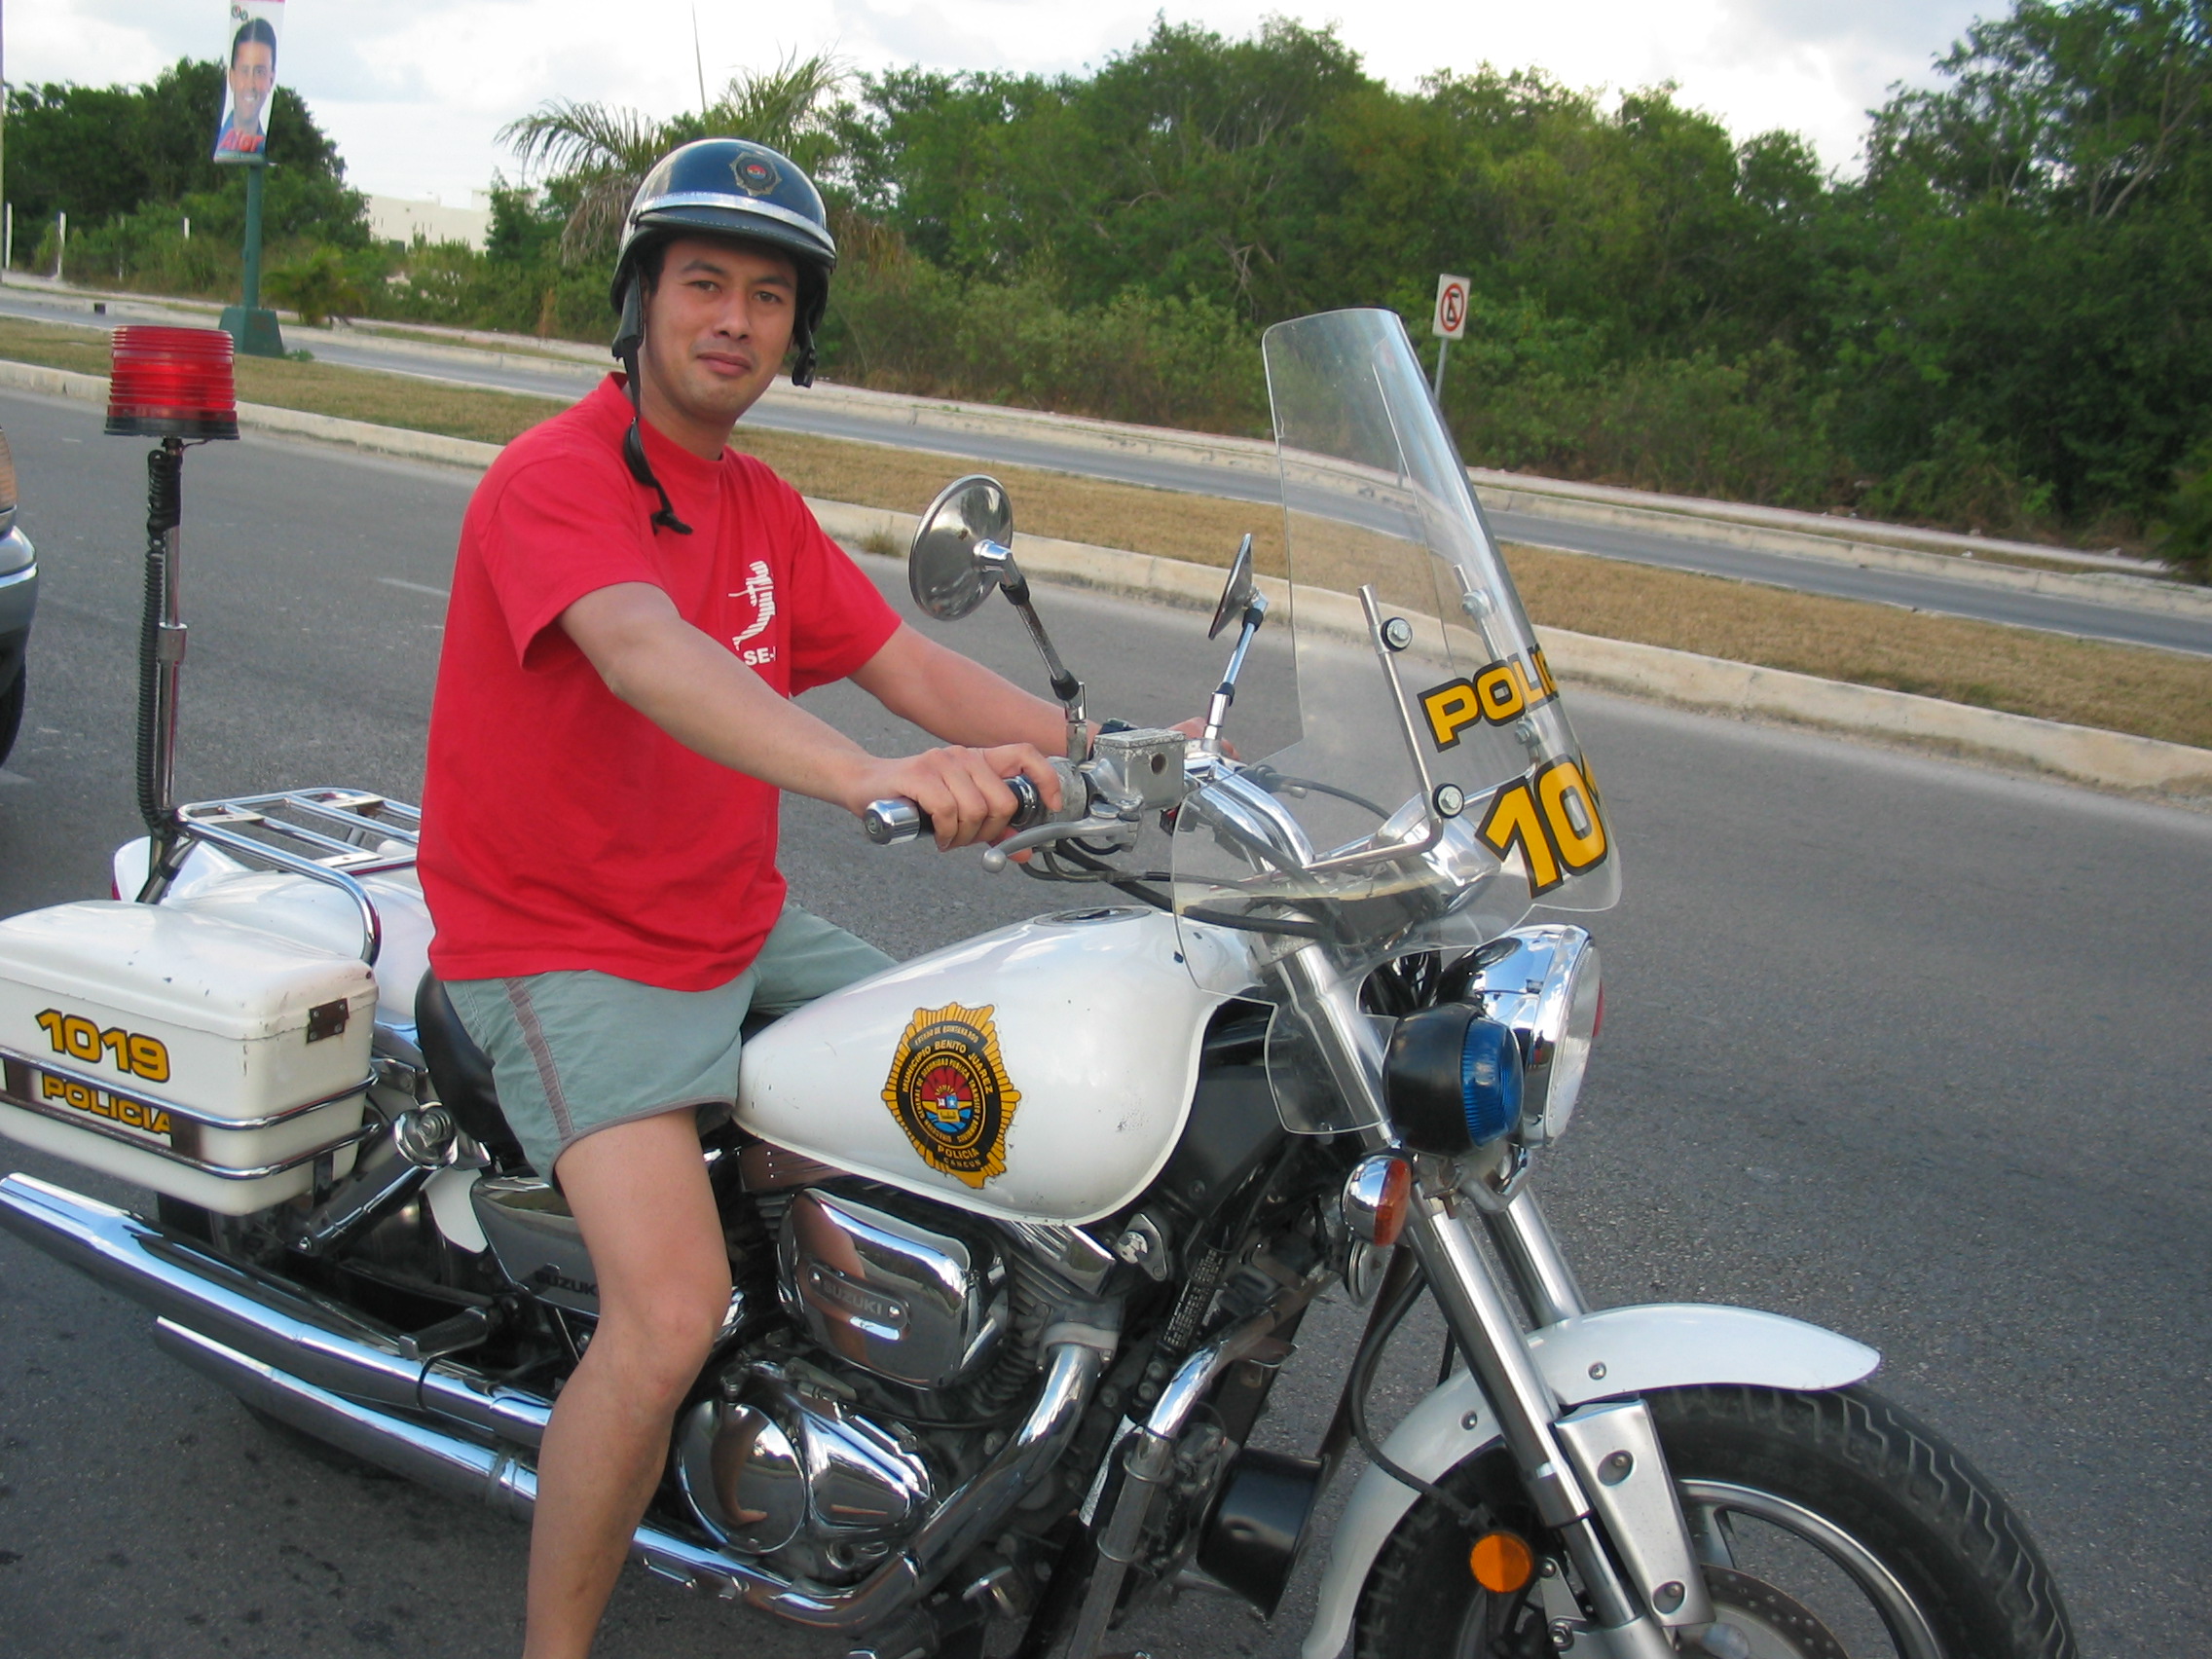 Me on a Policia Mexicana bike